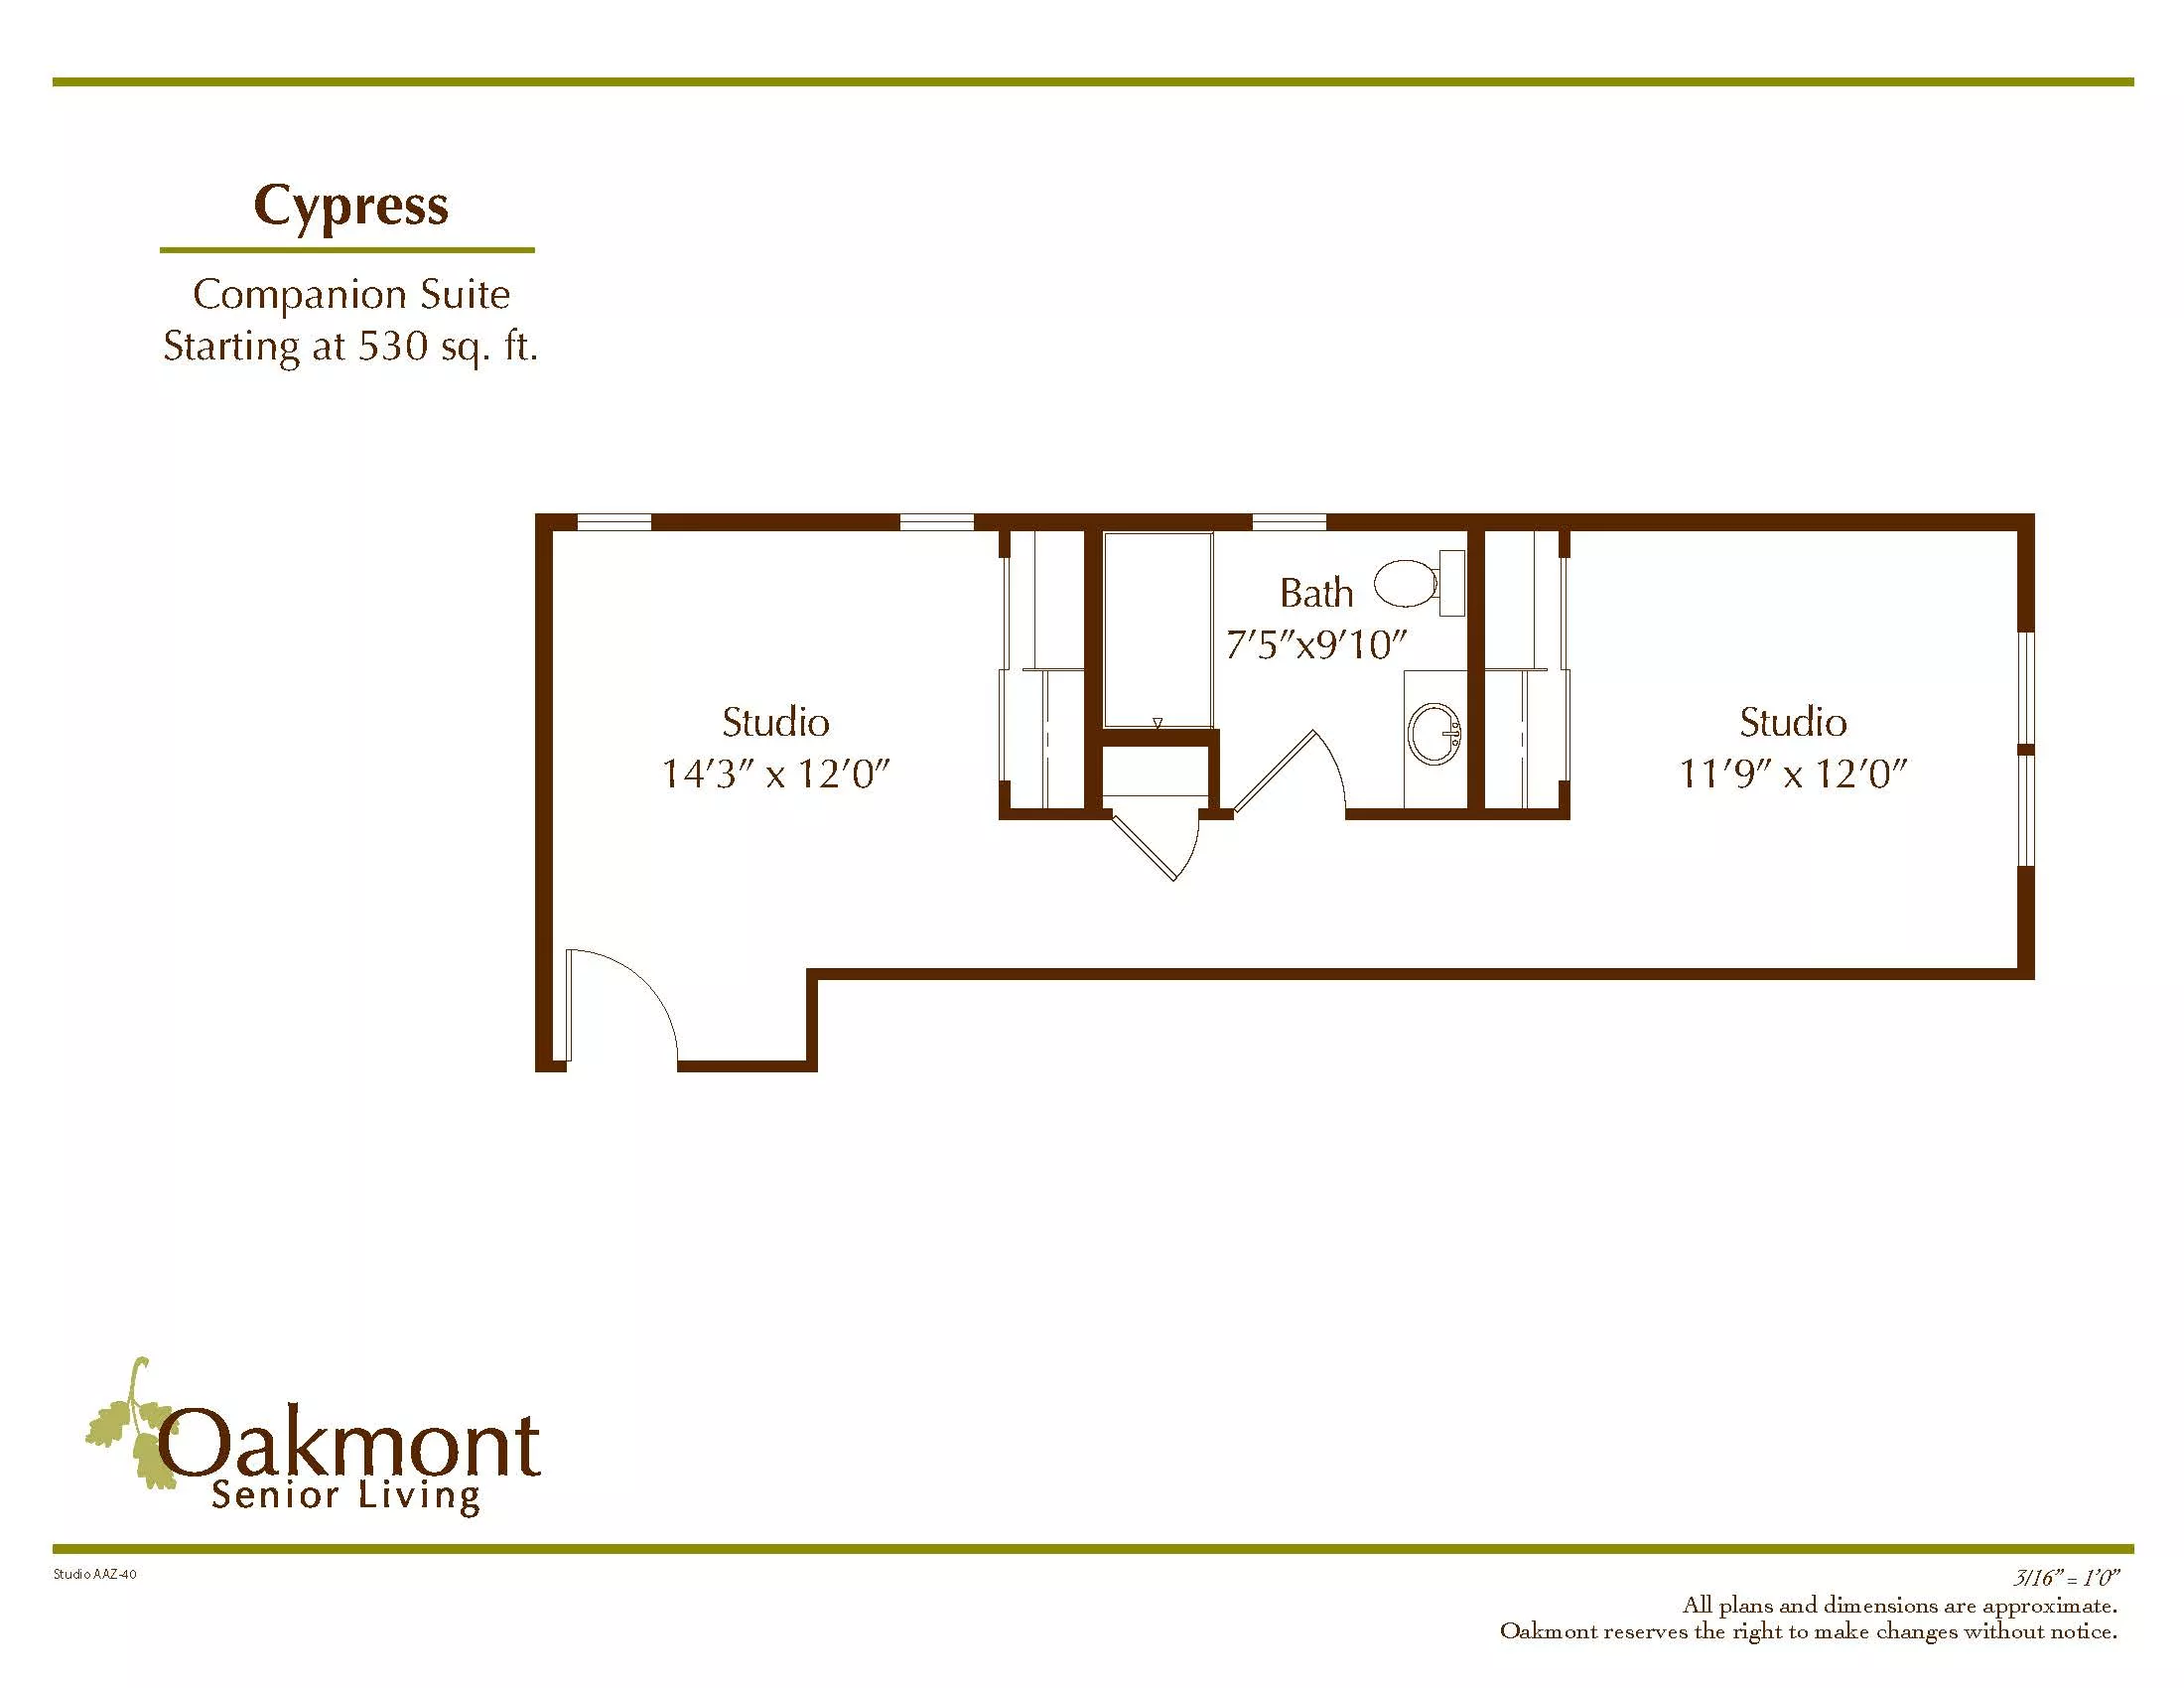 Cypress floor plan